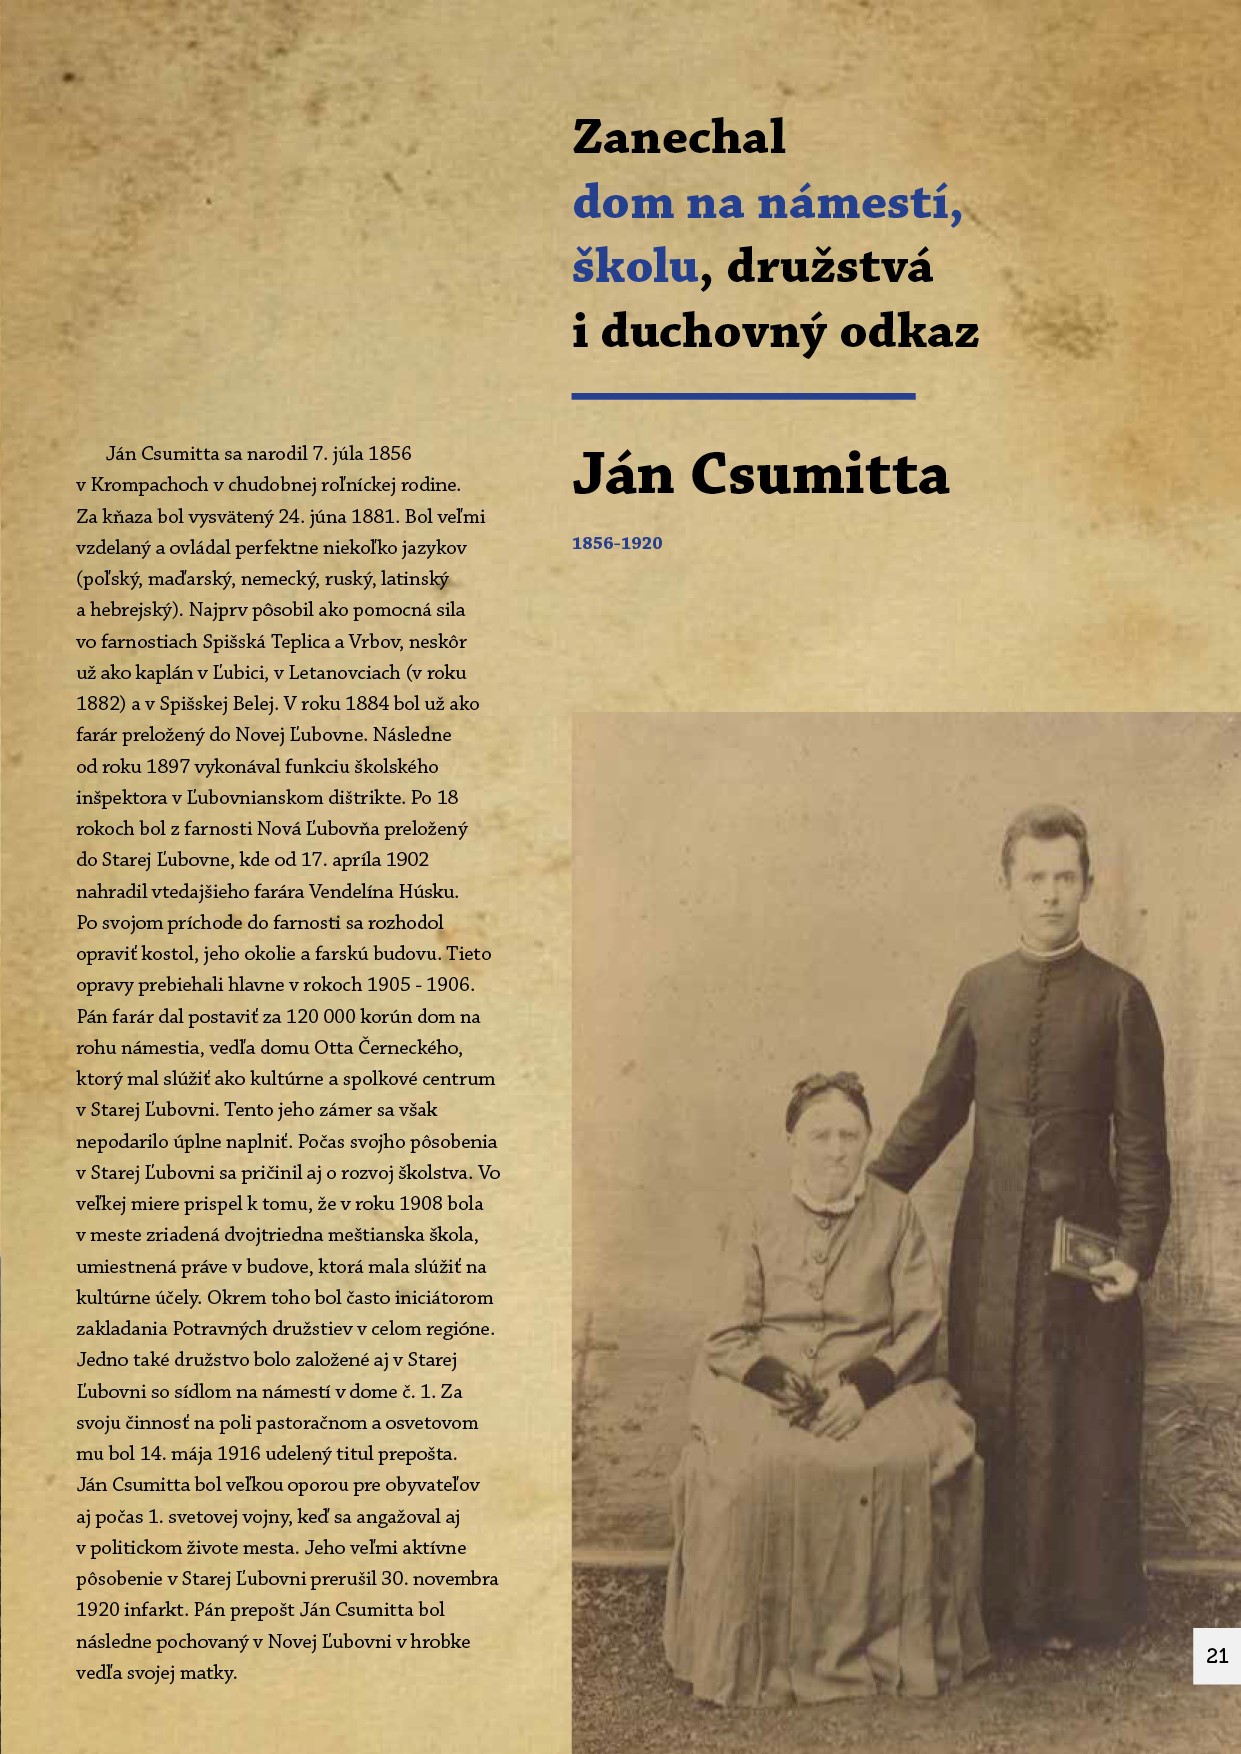 Ján Csumitta